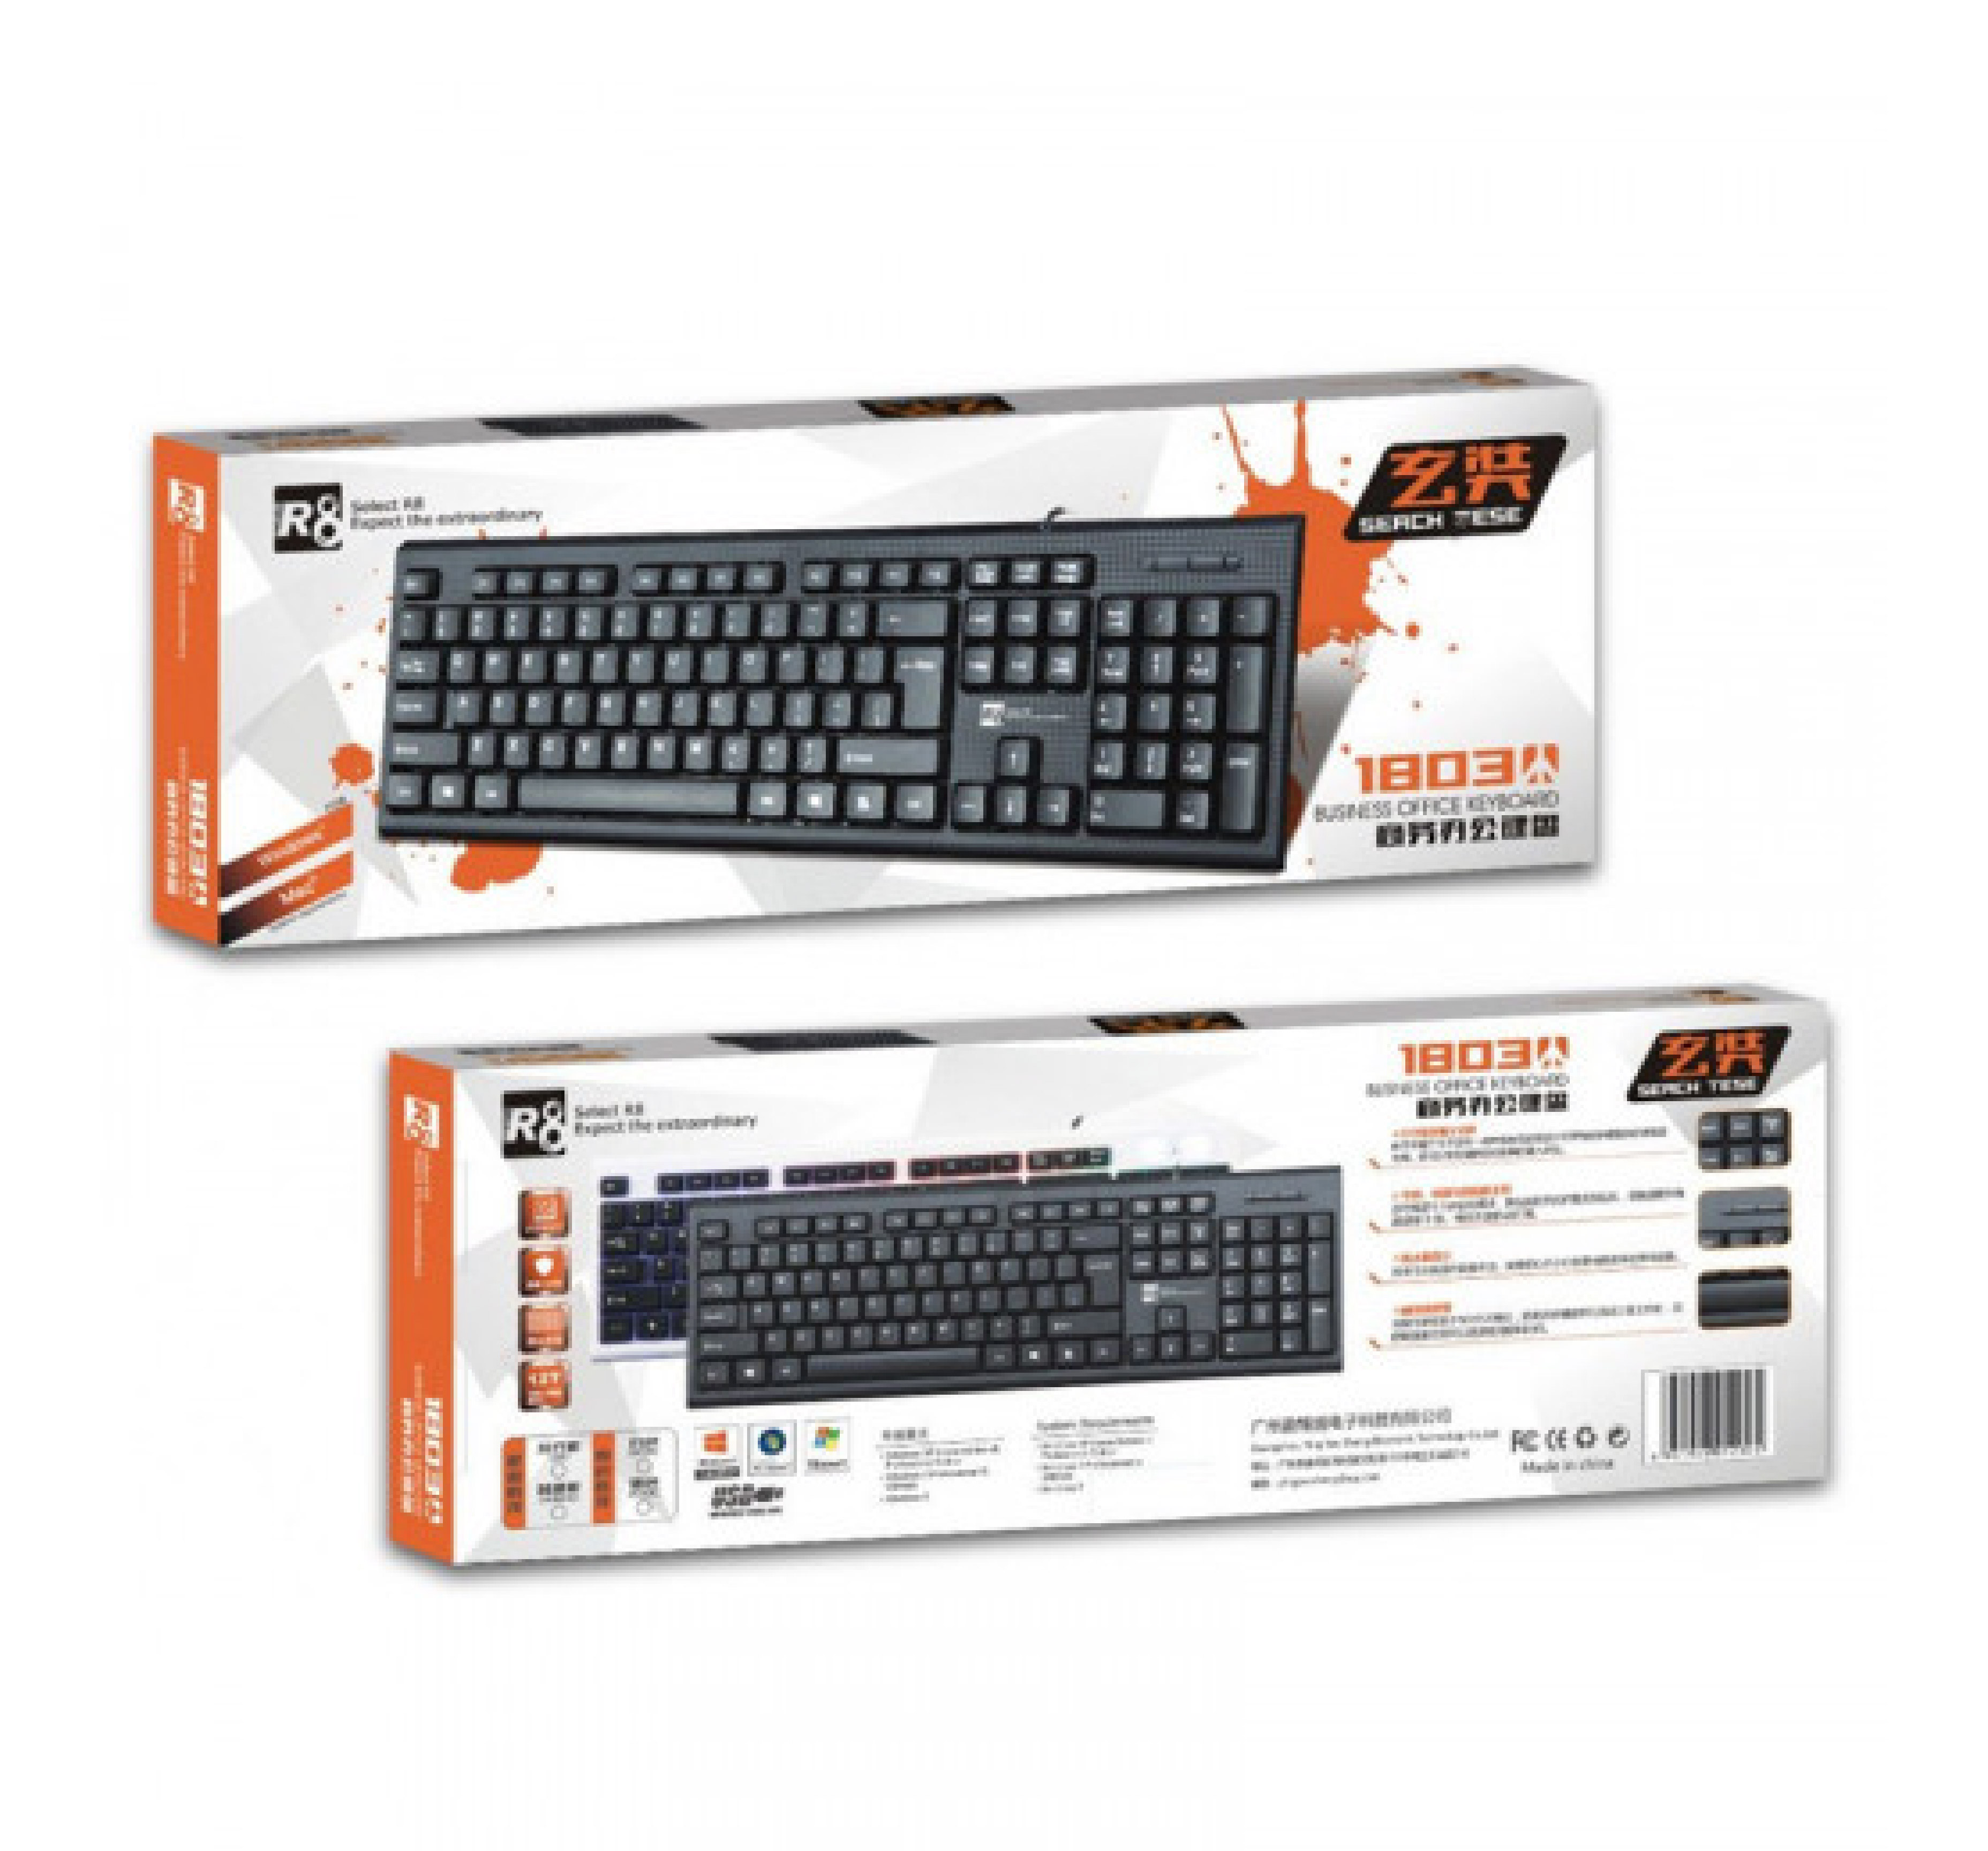 R8 1803 Keyboard